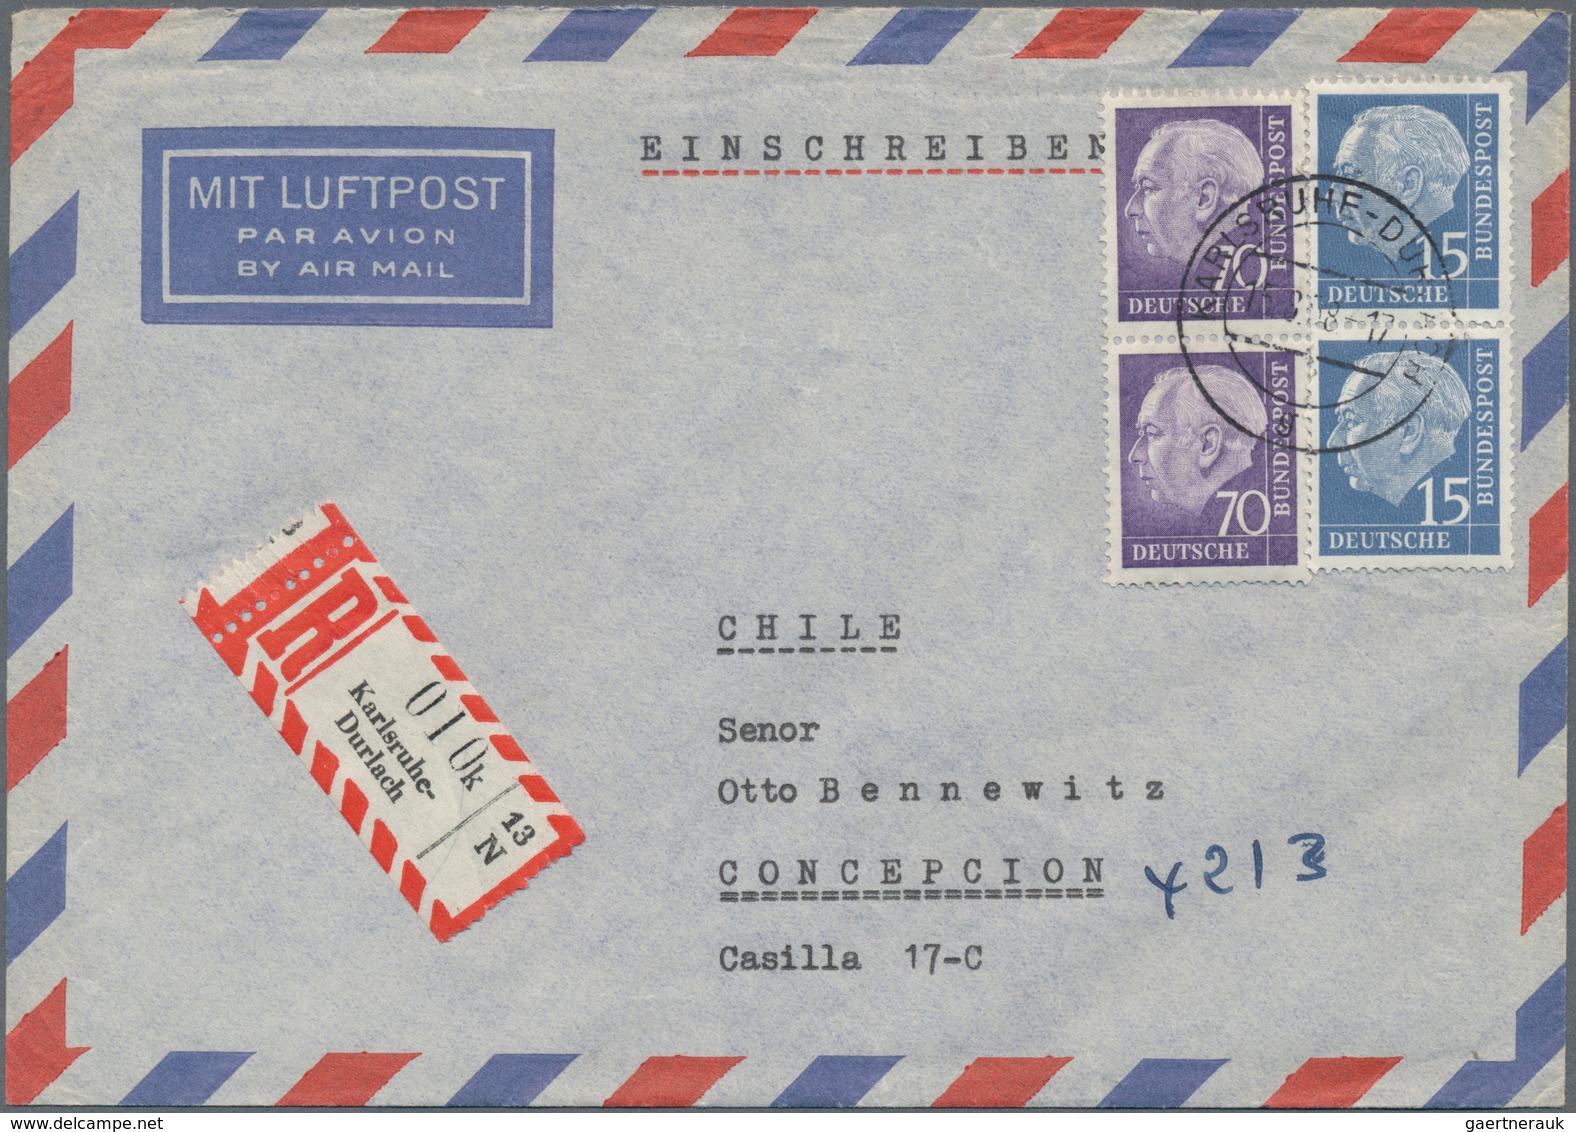 Bundesrepublik Deutschland: 1948/1968, vielseitige Partie von über 70 (meist Luftpost-) Briefen aus